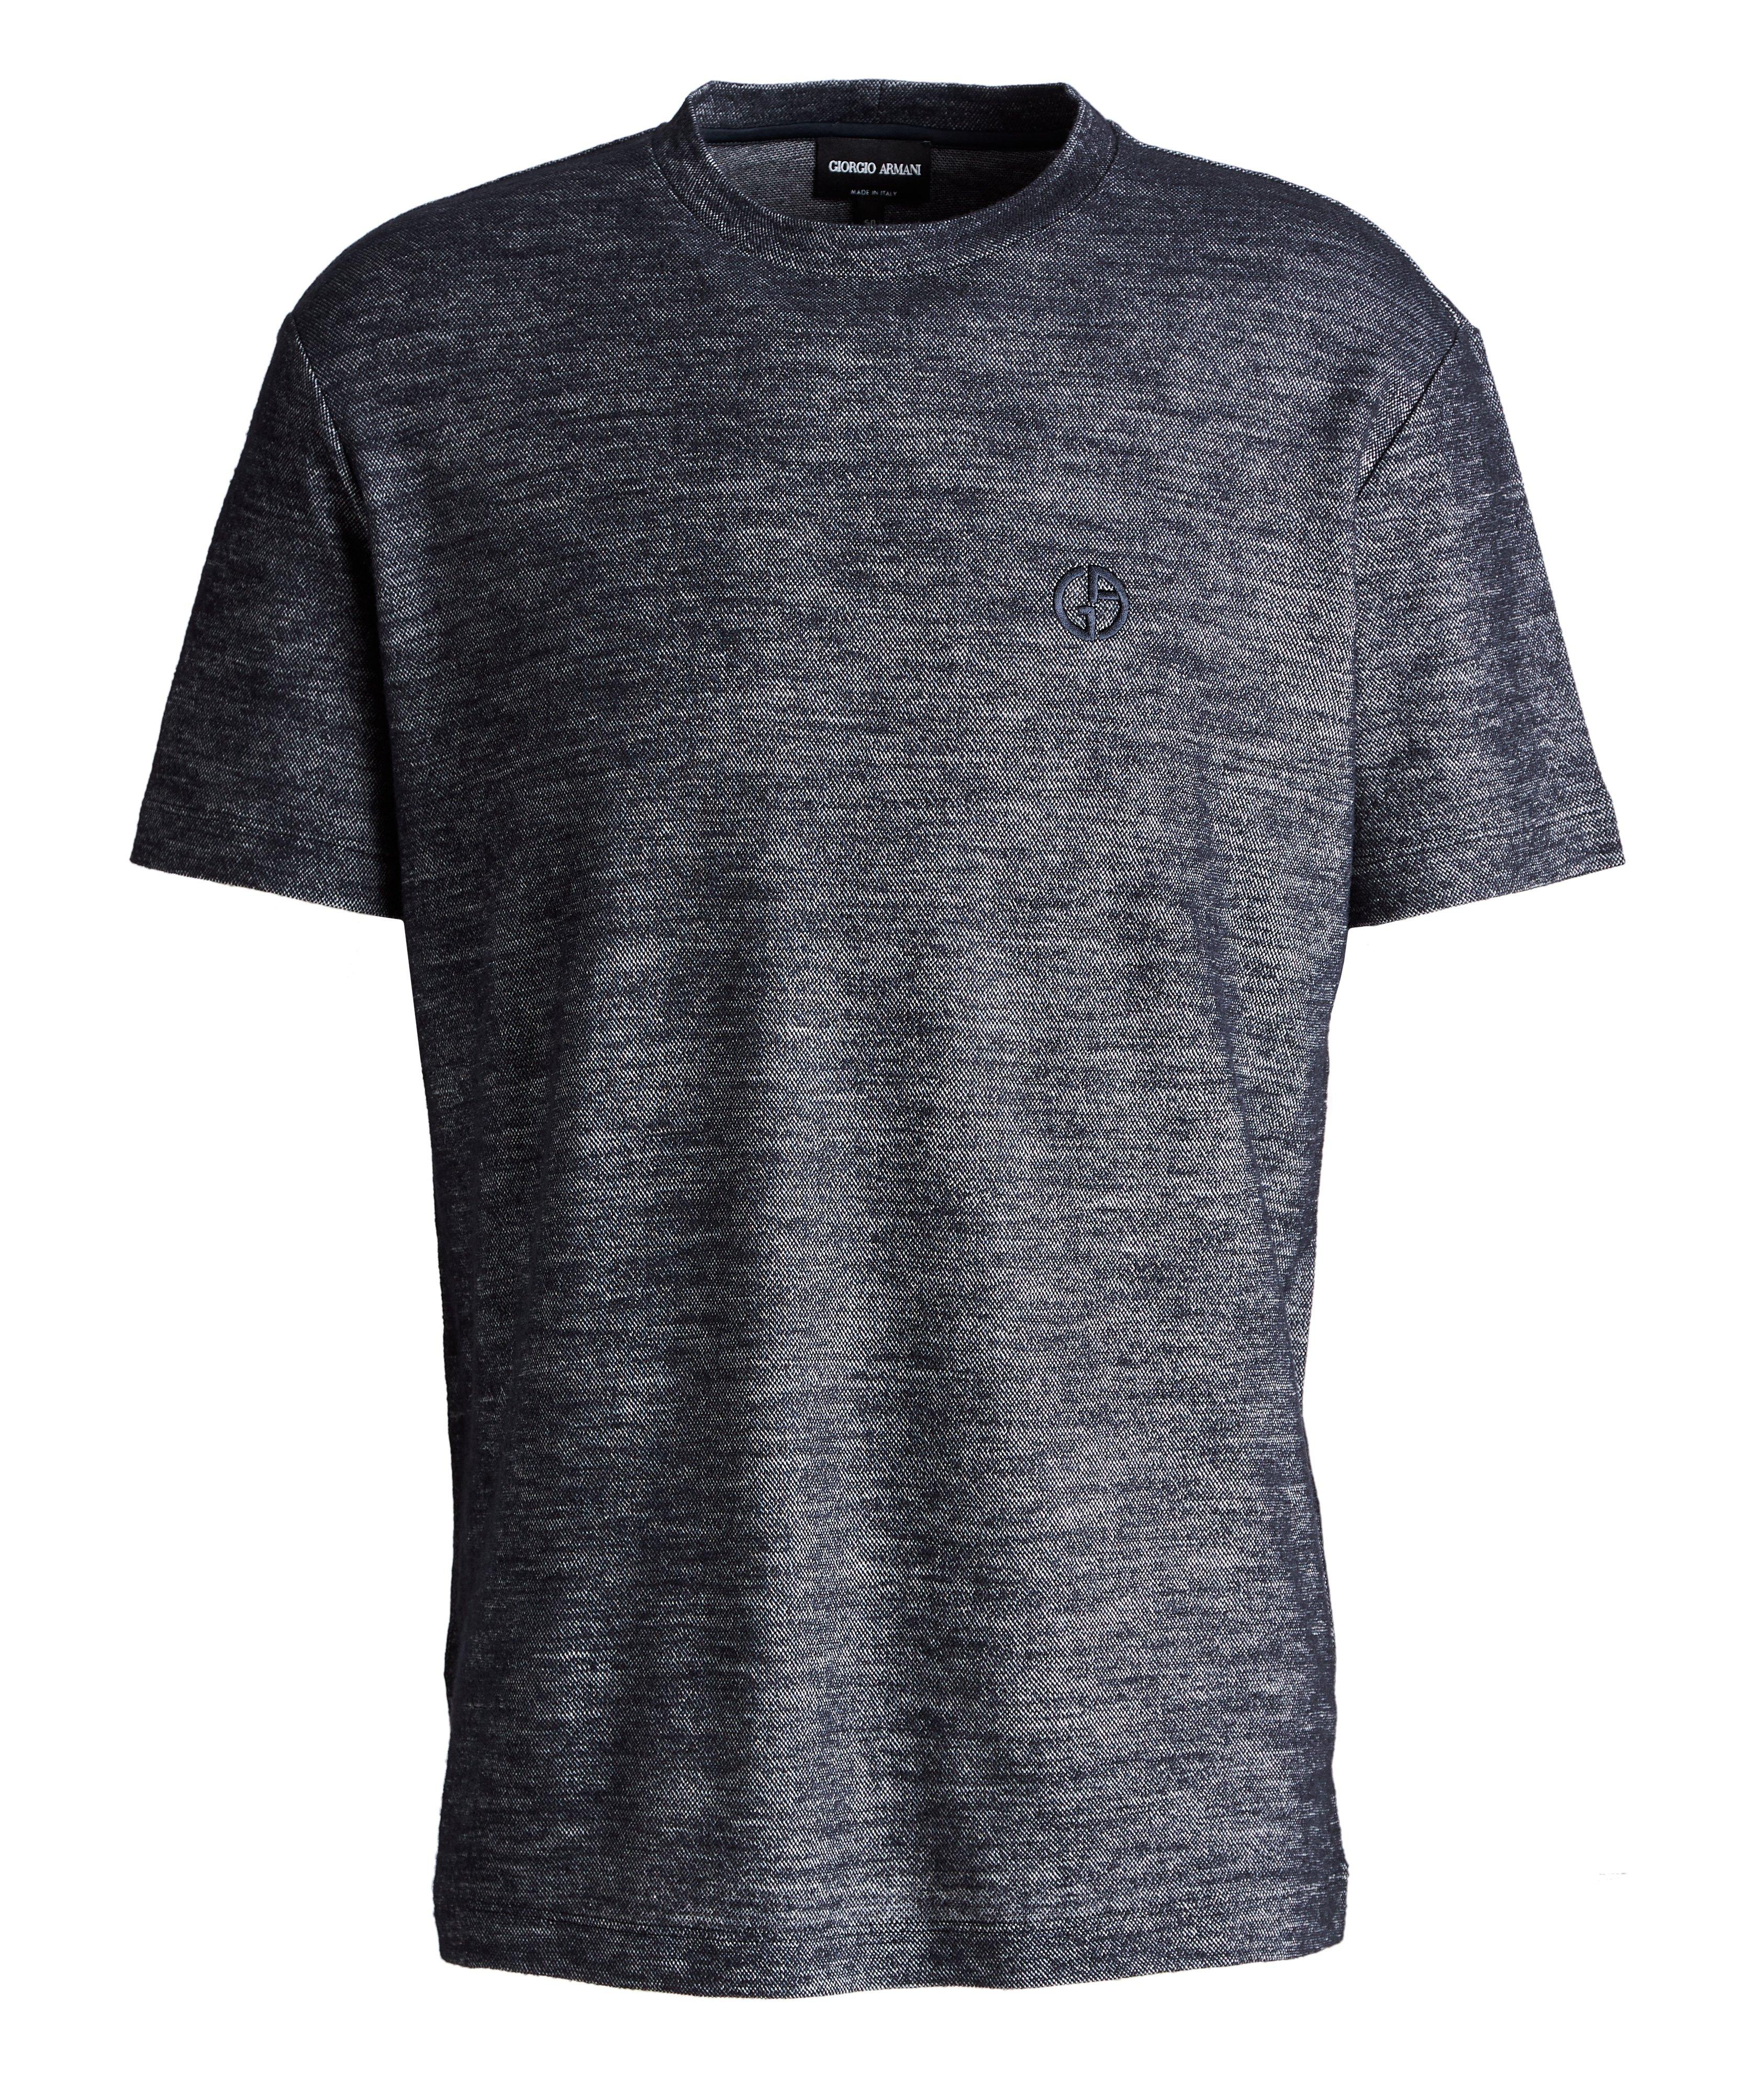 Cotton-Wool Jersey T-Shirt image 0